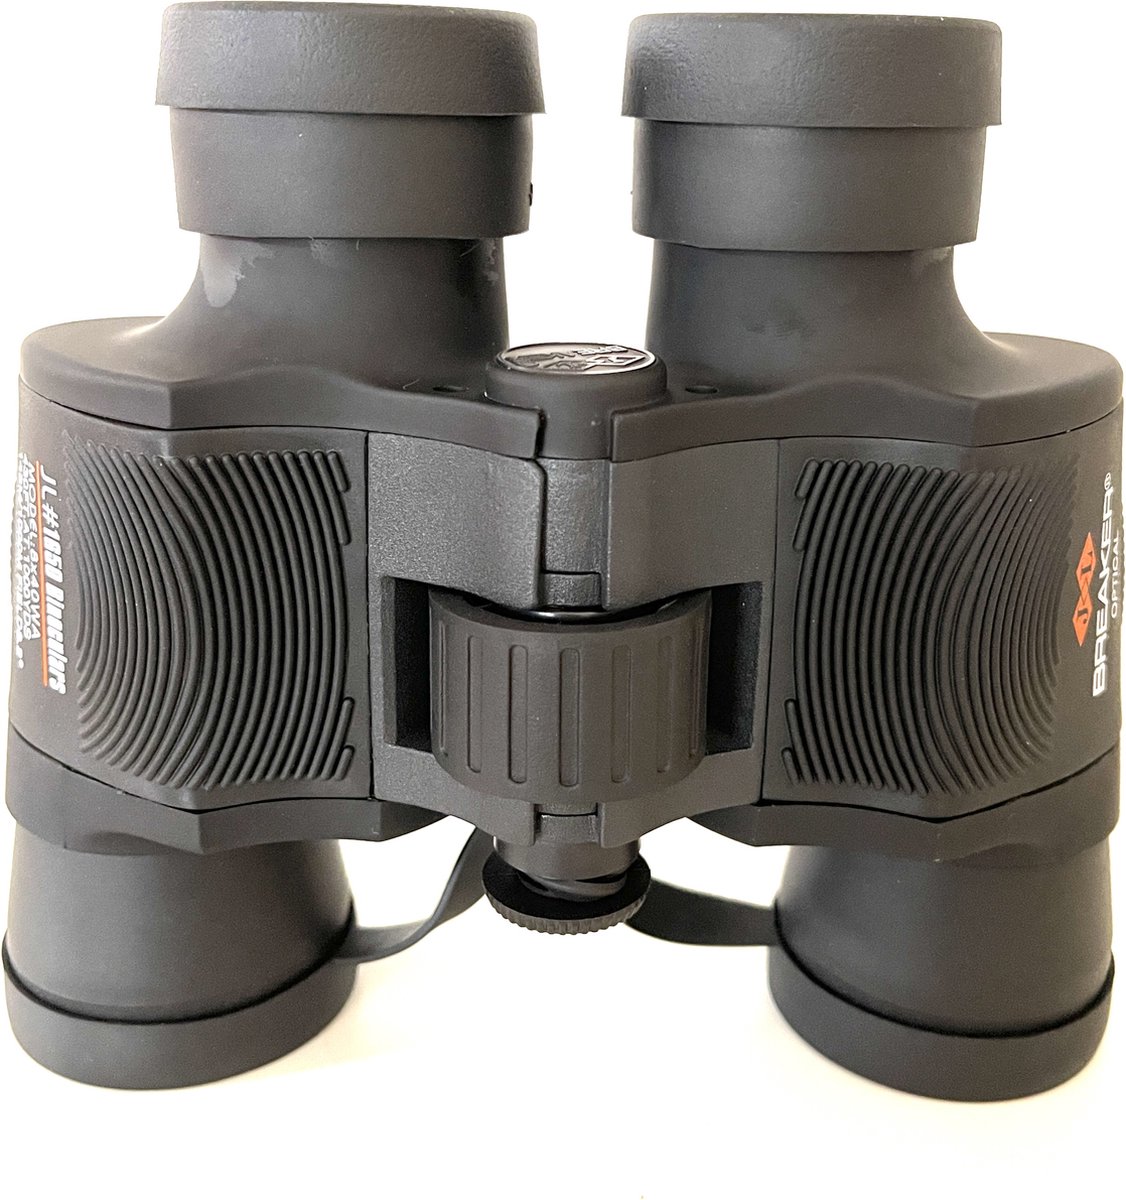 JL BREAKER Verrekijker - Binoculars - 8x40 - Maximale vergroting 8x - Zwart